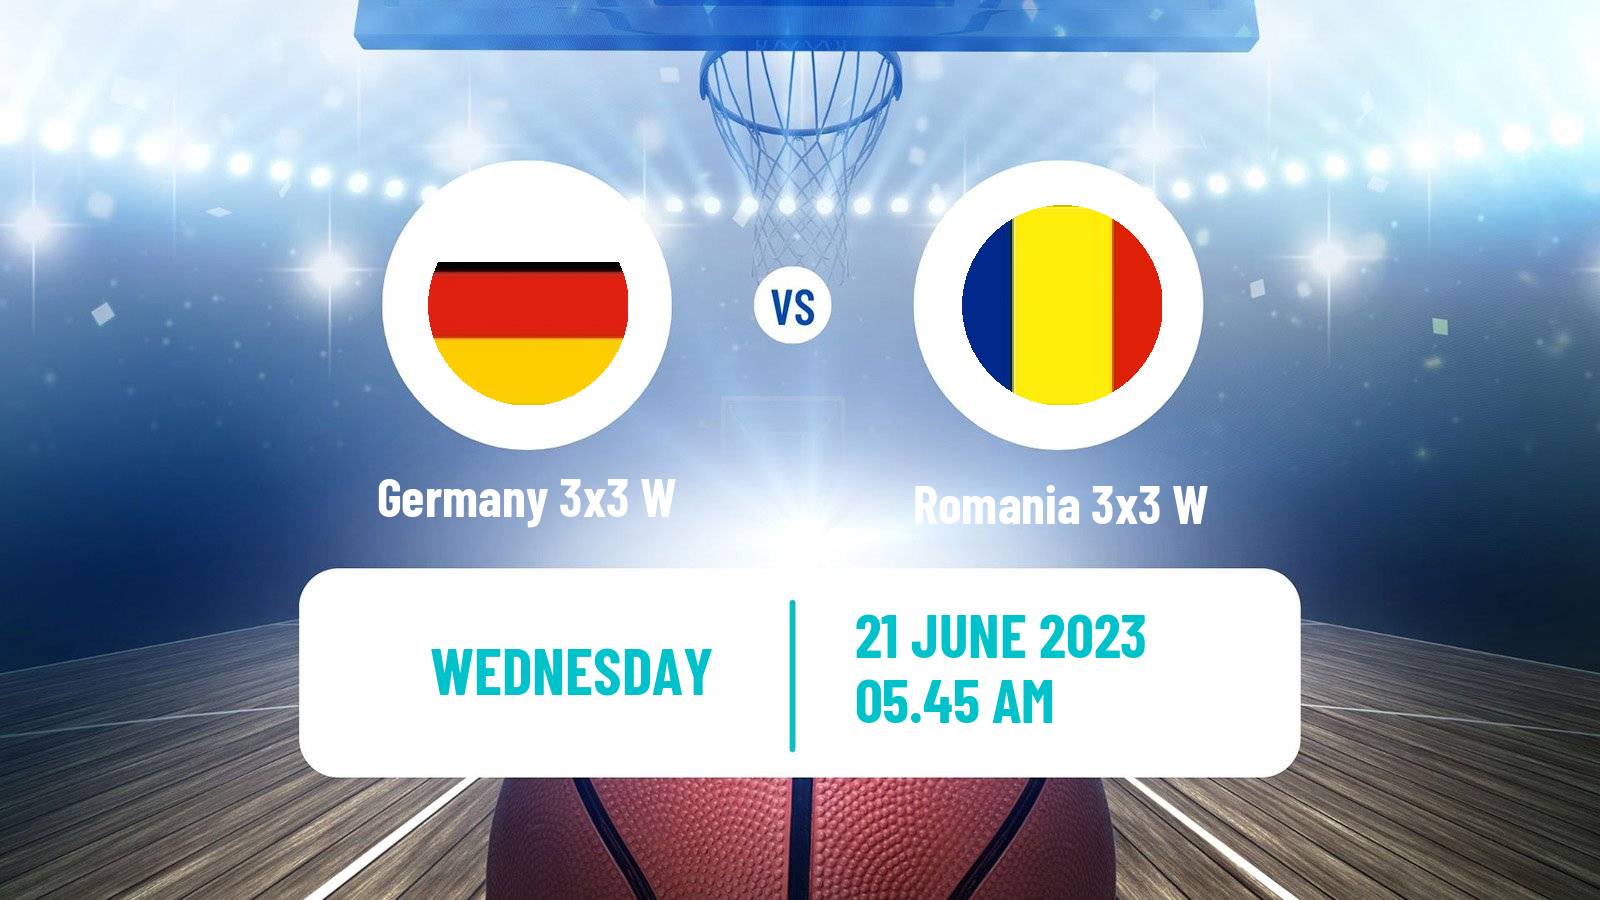 Basketball European Games 3x3 Women Germany 3x3 W - Romania 3x3 W